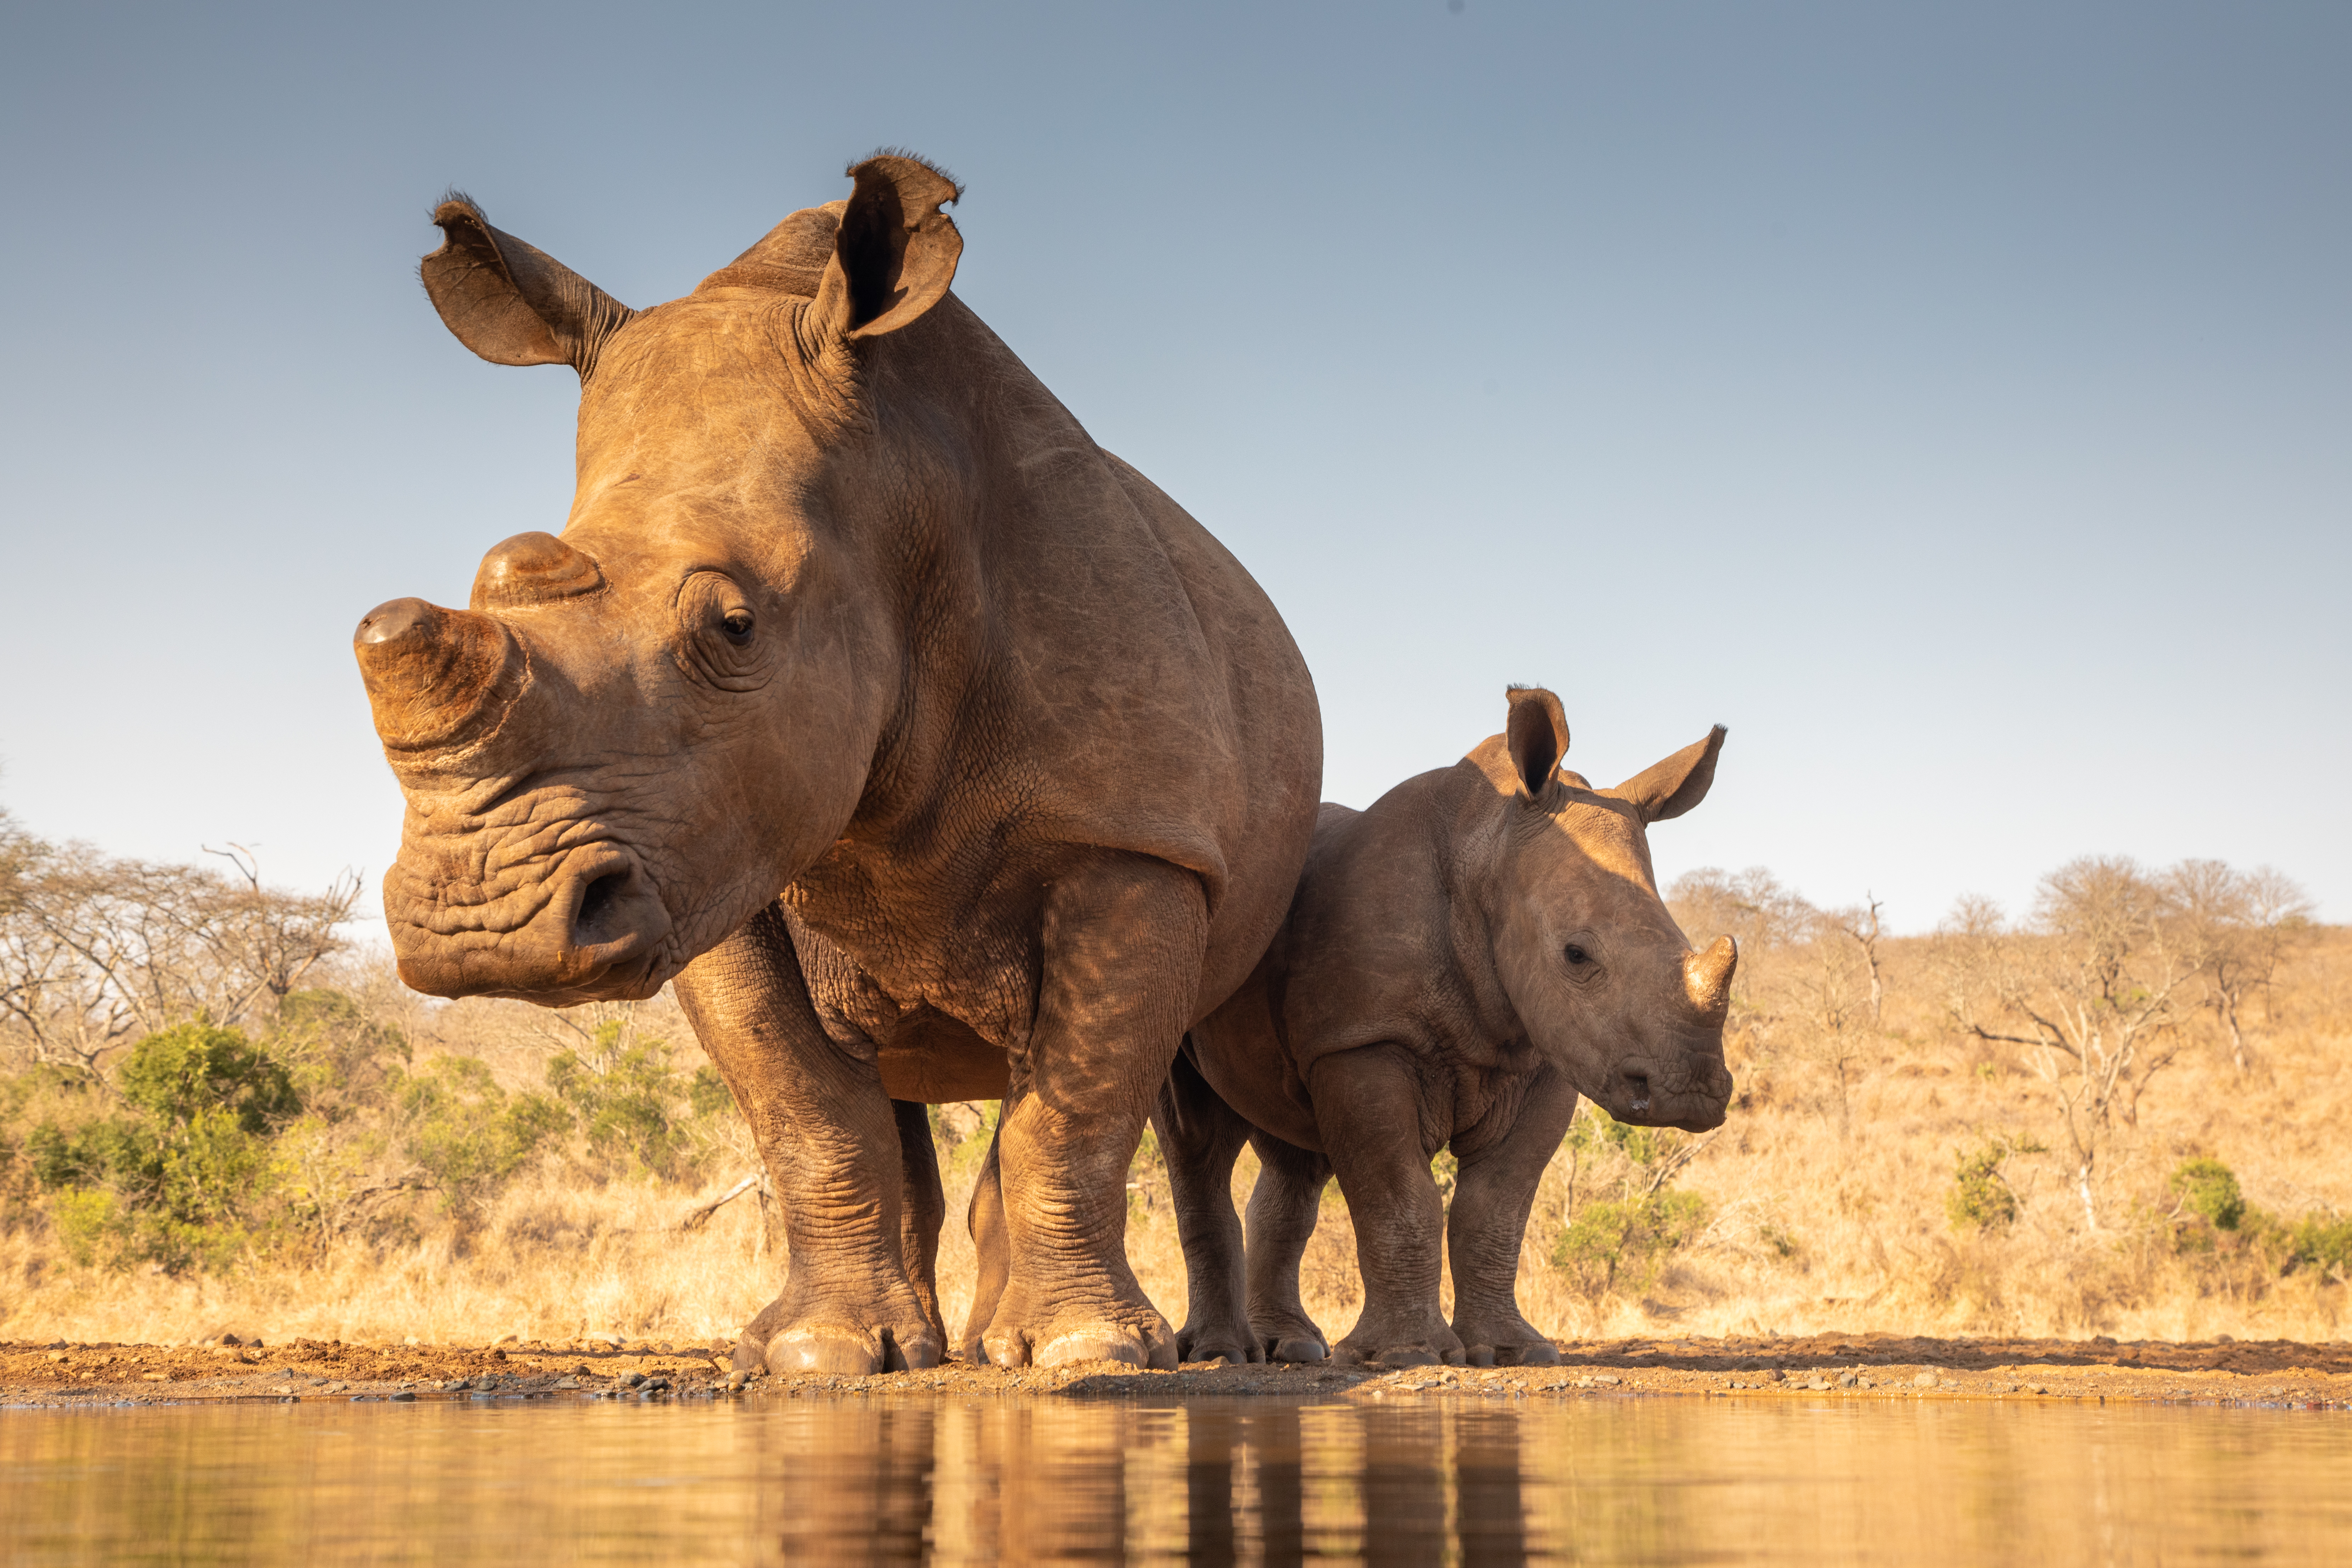 <p><strong>Явански носорози</strong></p>

<p>Яванският носорог е един от най-застрашените видове от петте вида носорози. Те са тъмносиви на цвят и имат един рог, който достига до 25 см. Кожата му има редица гънки и наподобява бронирано покритие. Яванският носорог изглежда много подобен на близкородствения по-голям еднорог носорог, но главата му е много по-малка и кожните гънки са по-малко изразителни.</p>

<p>Известно, е че все още живеят около 58-68 носорога в Индонезия в националния парк Уюнг Кулон. Това животно някога е живяло в североизточна Индия и Югоизточна Азия. Последният представител на дивата популация във Виетнам е изчезнал през 2010 година.</p>